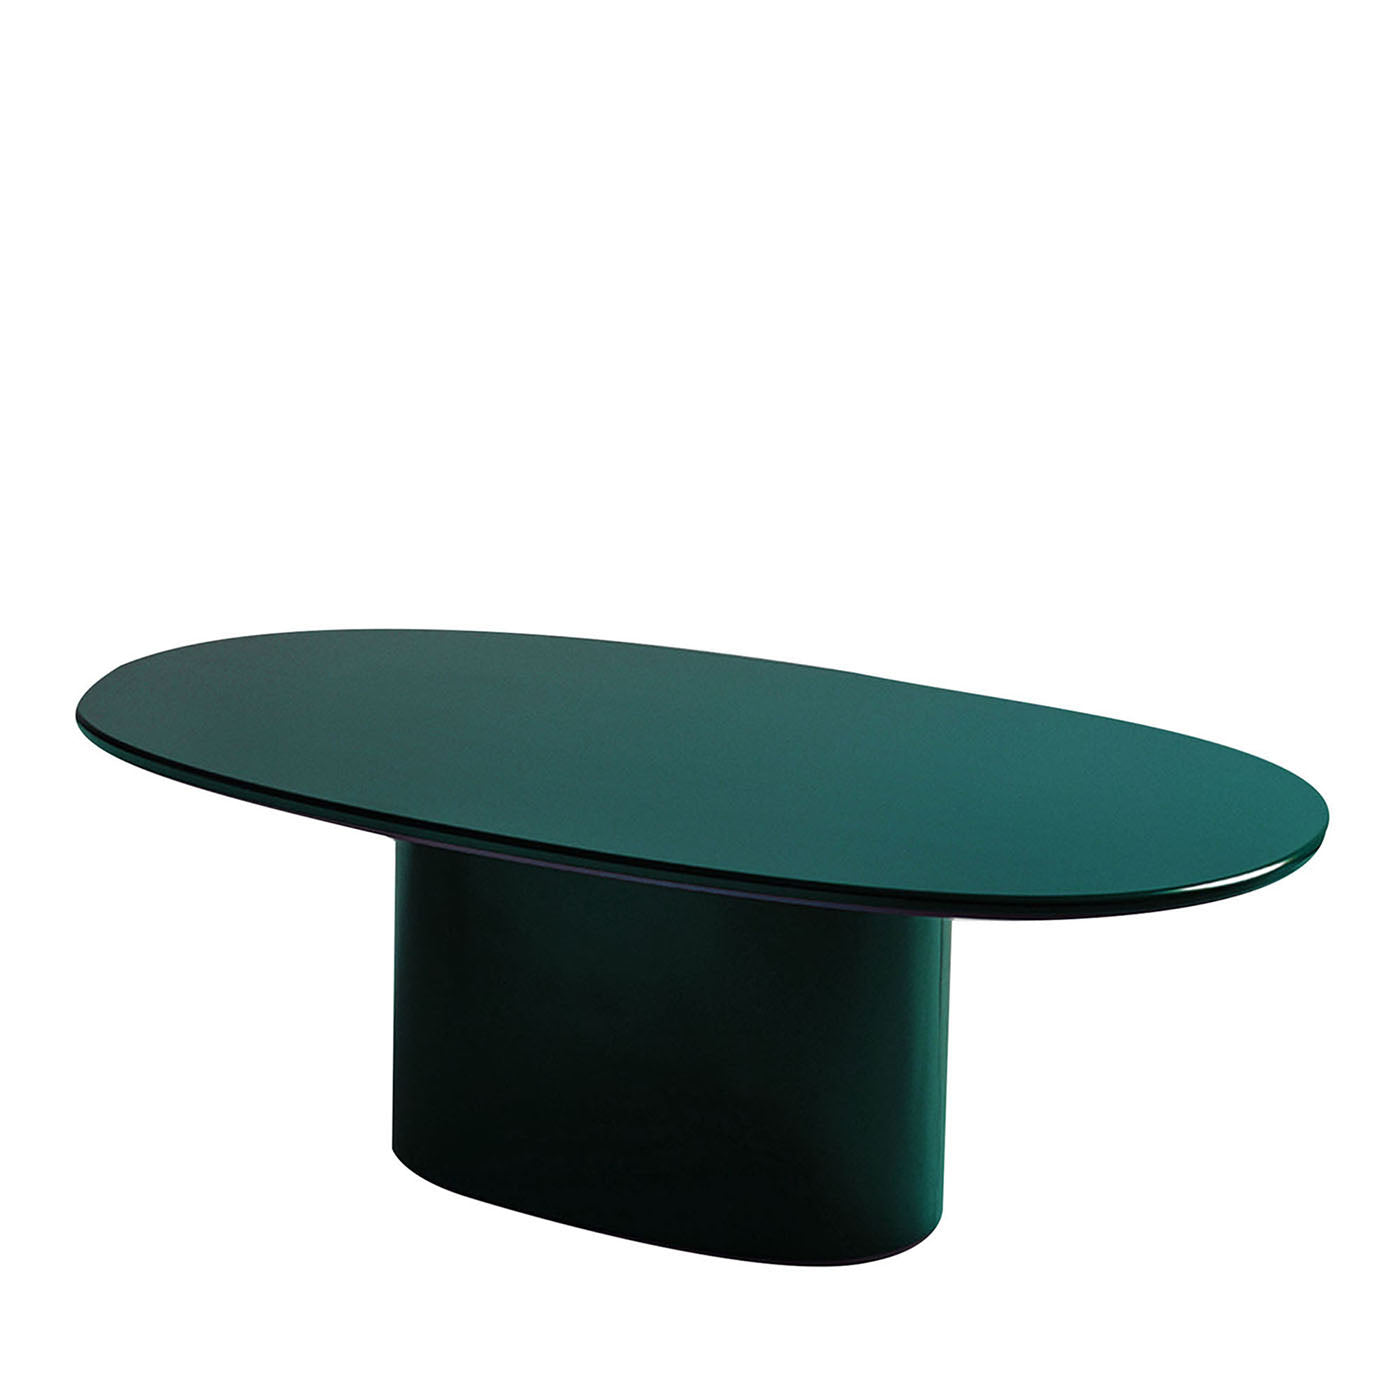 Tavolo da pranzo Oku Oval Emerald di Federica Biasi - Vista principale